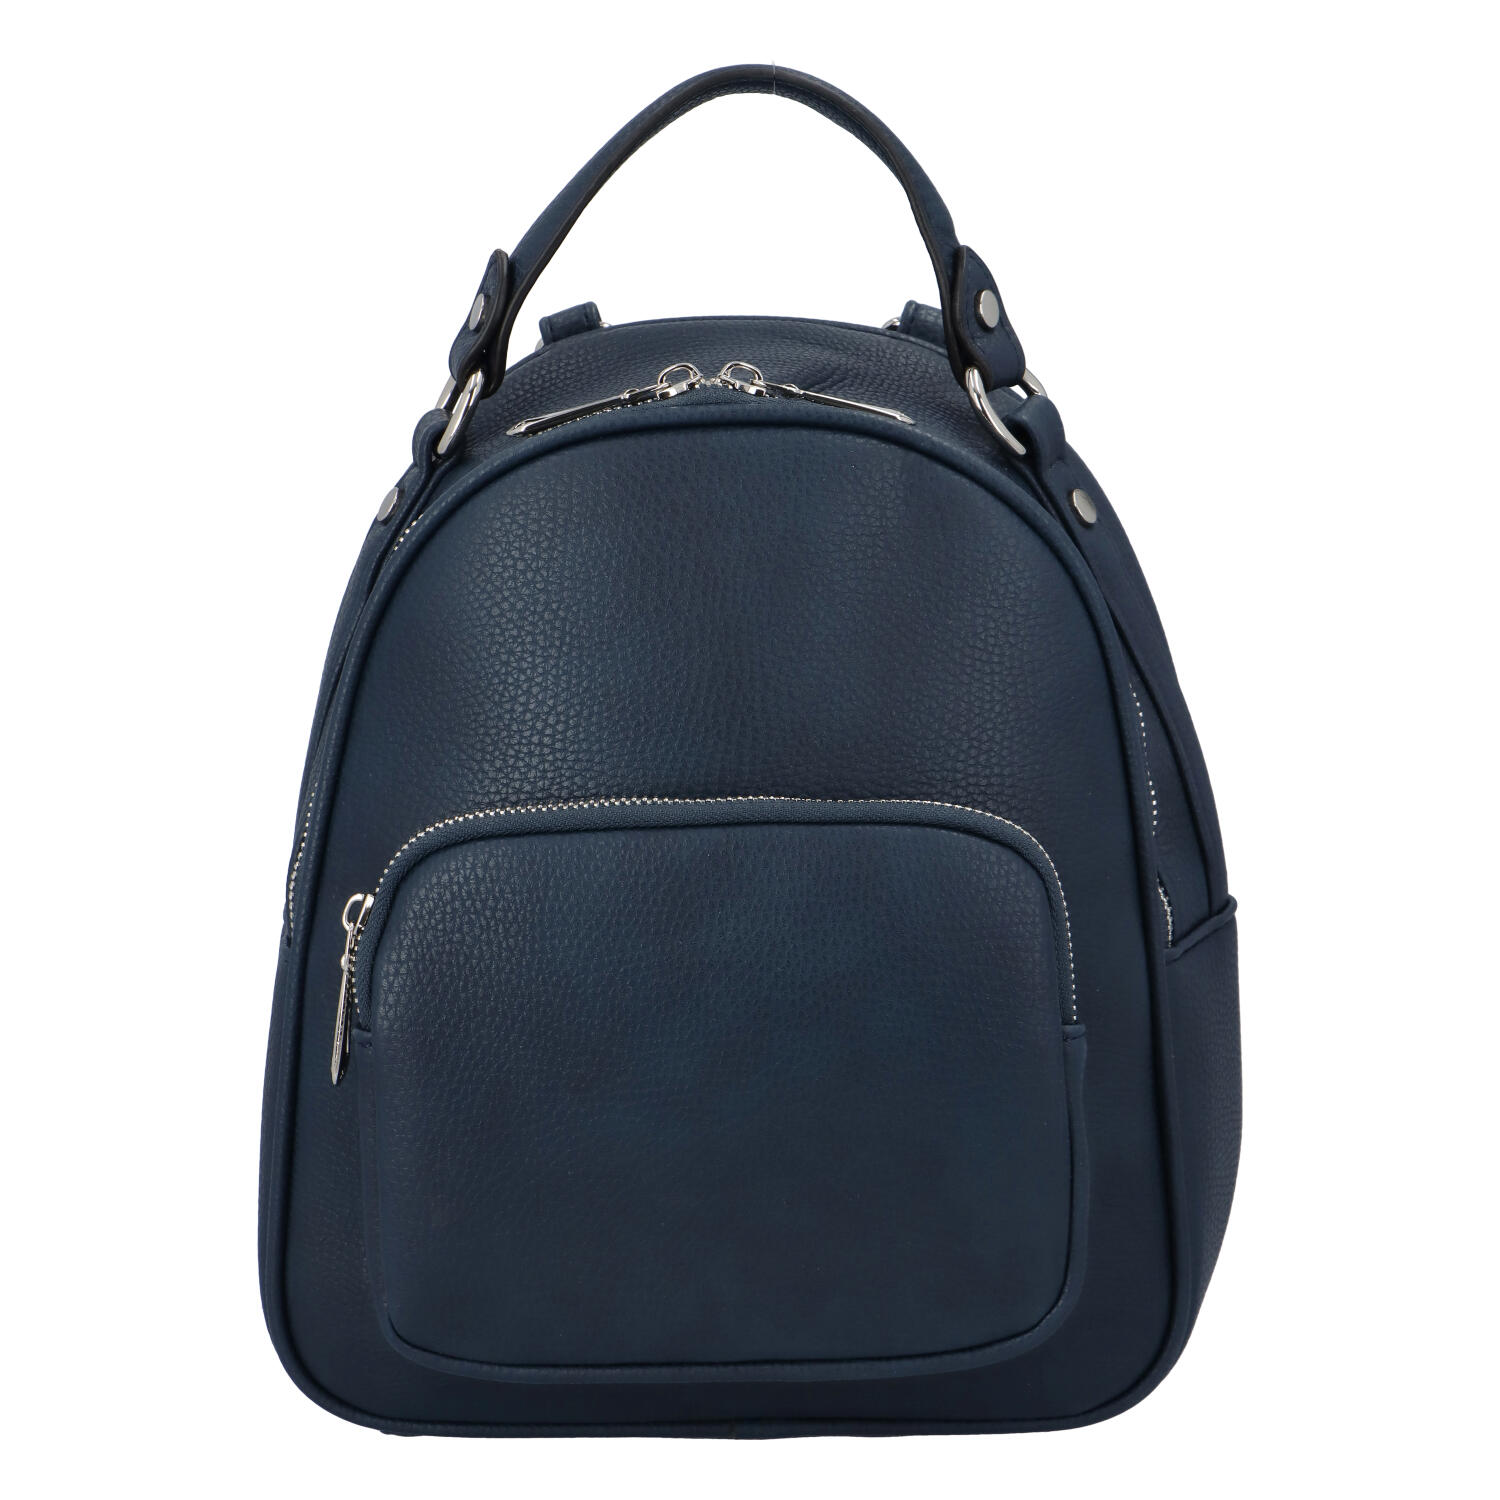 Dámský módní batůžek kabelka tmavě modrý - FLORA&CO Jante